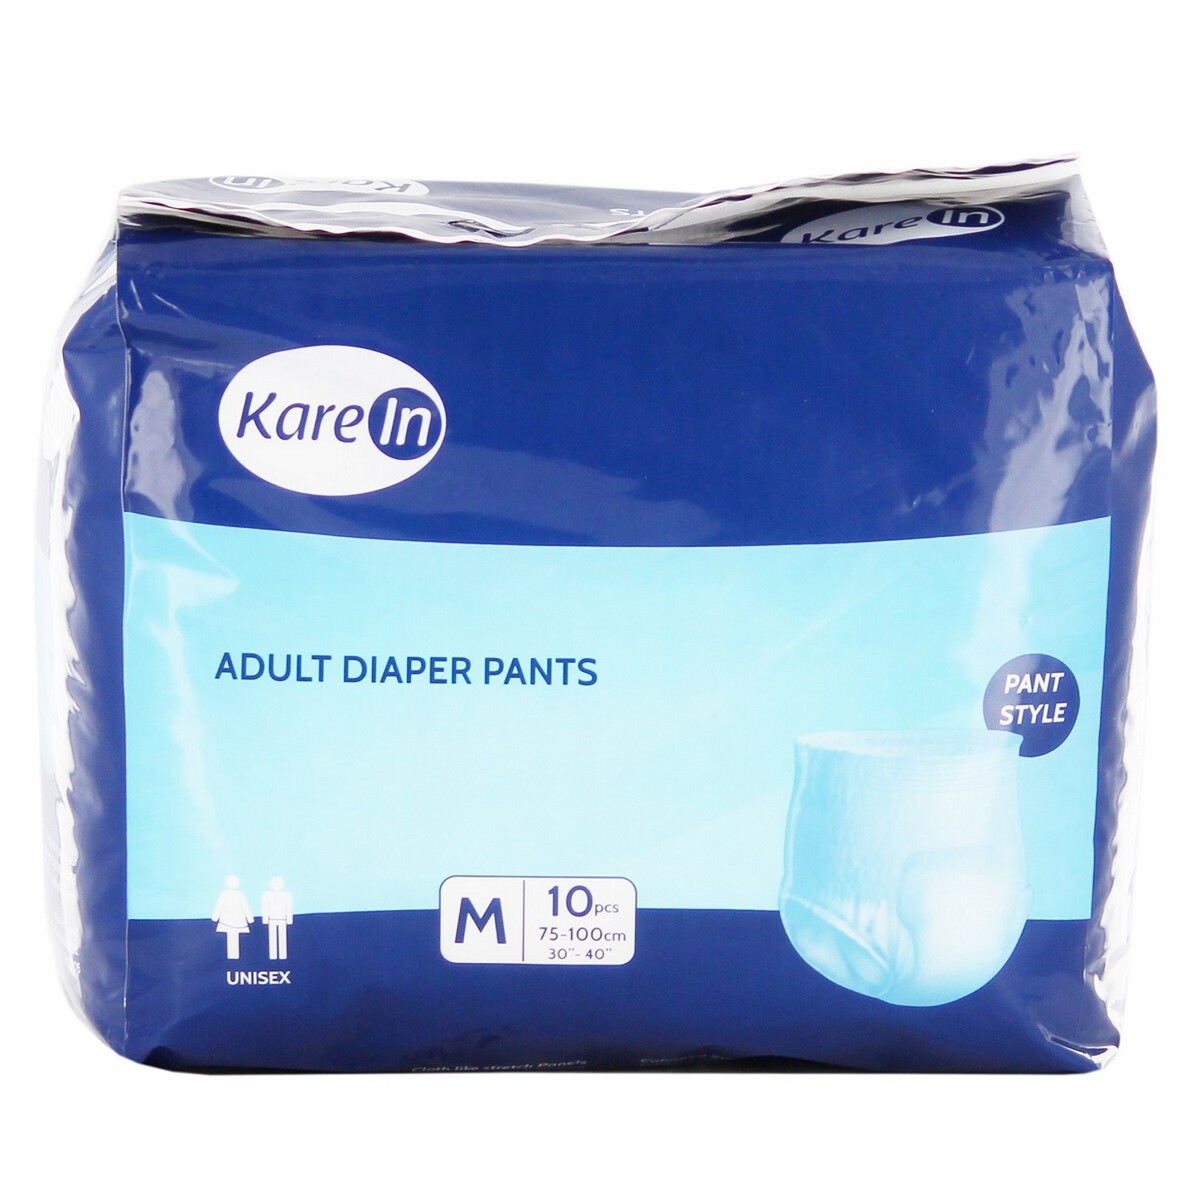 Kare In Adult Diaper Pants Medium 10's